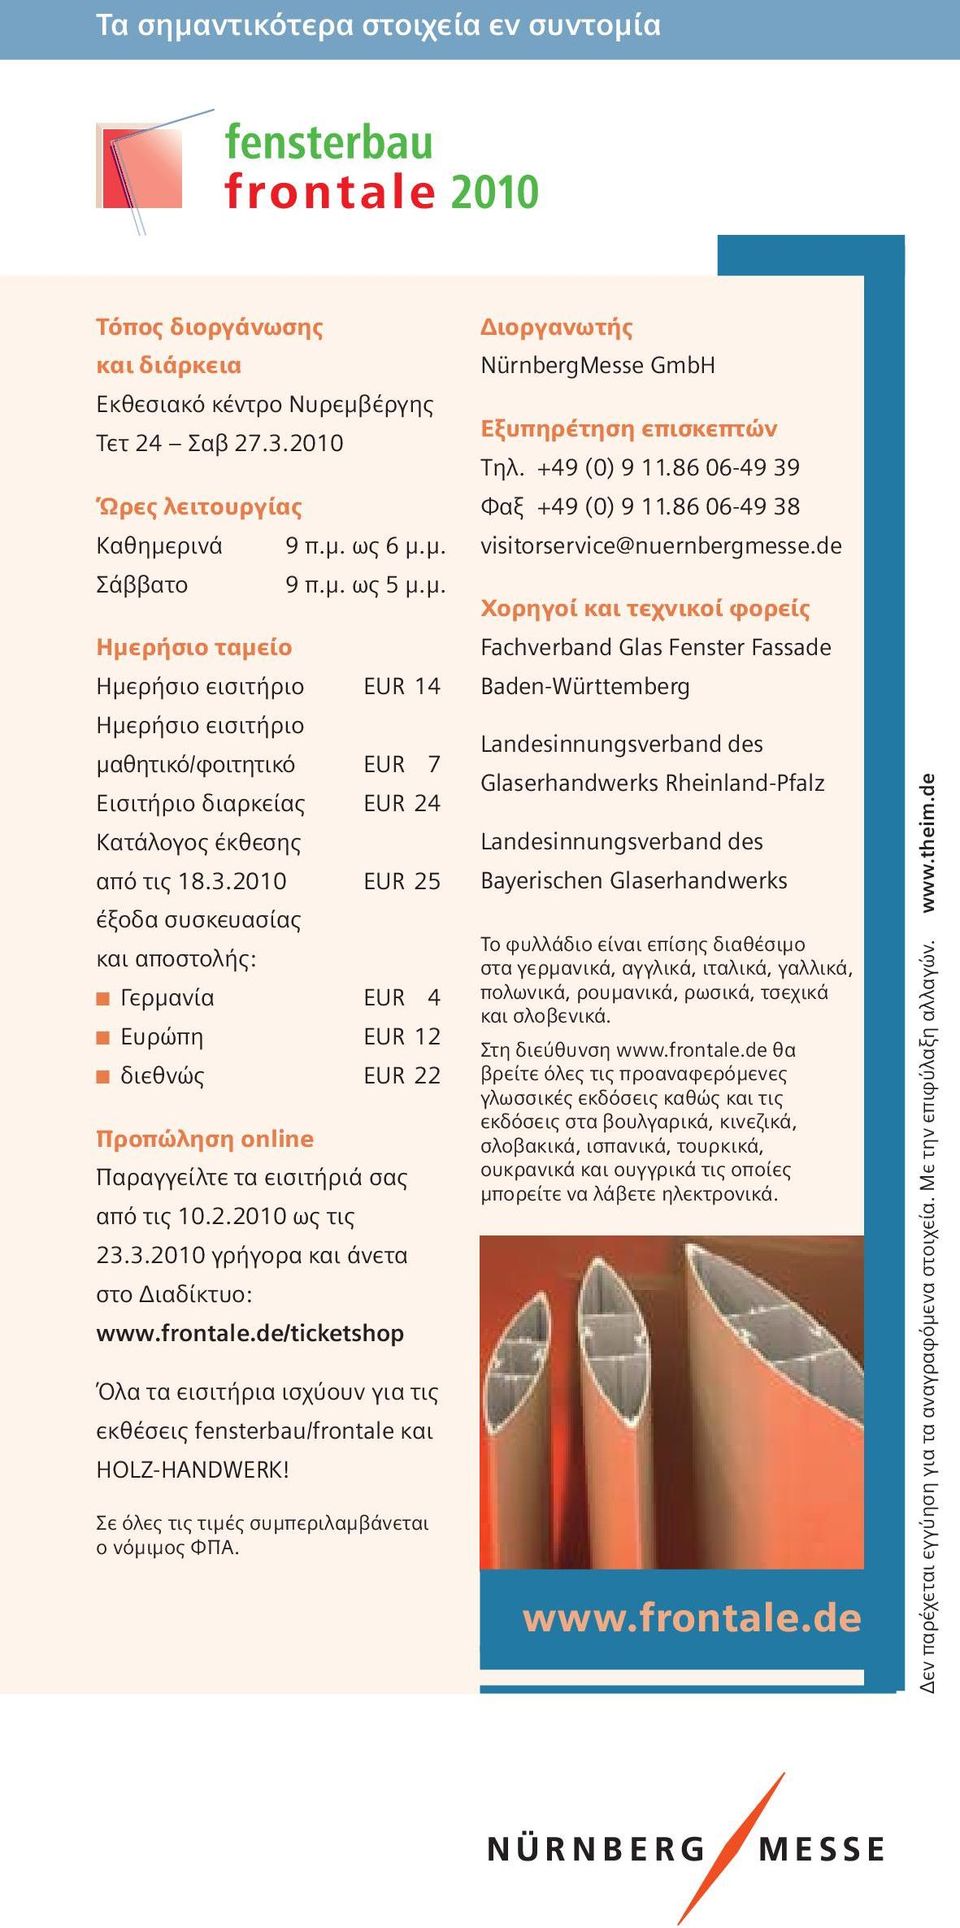 frontale.de/ticketshop Όλα τα εισιτήρια ισχύουν για τις εκθέσεις fensterbau/frontale και HOLZ-HANDWERK! Σε όλες τις τιμές συμπεριλαμβάνεται ο νόμιμος ΦΠΑ.